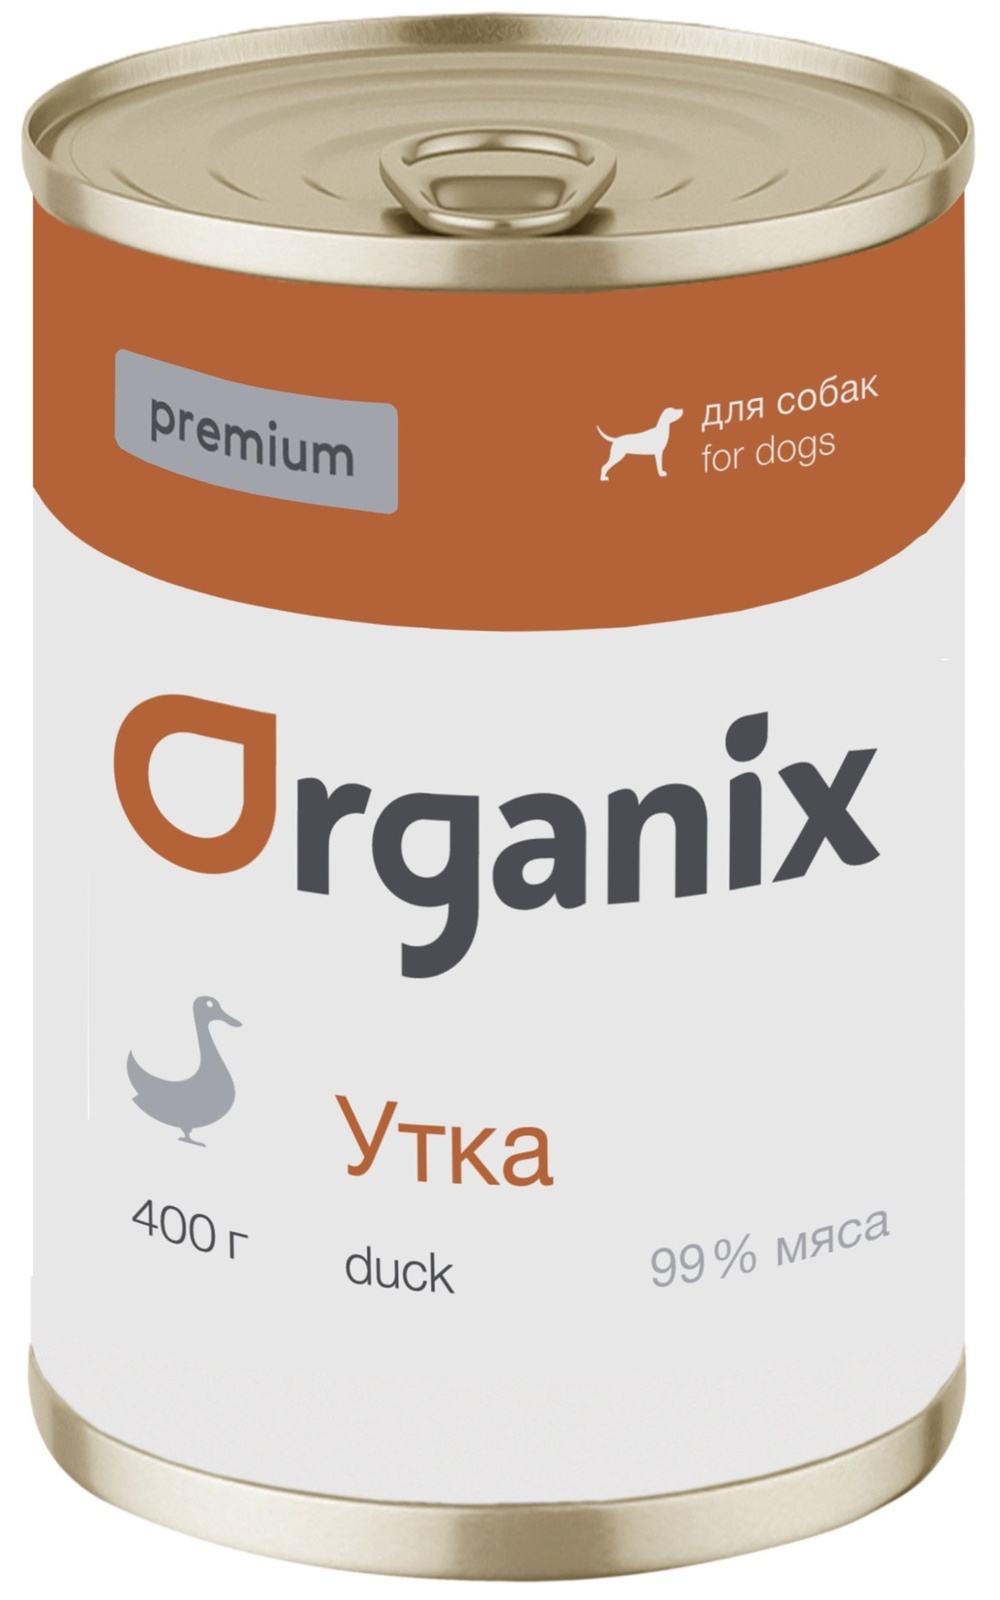 Organix консервы Organix монобелковые премиум консервы для собак, с уткой (100 г) organix консервы organix консервы для собак телятина с зеленой фасолью 100 г